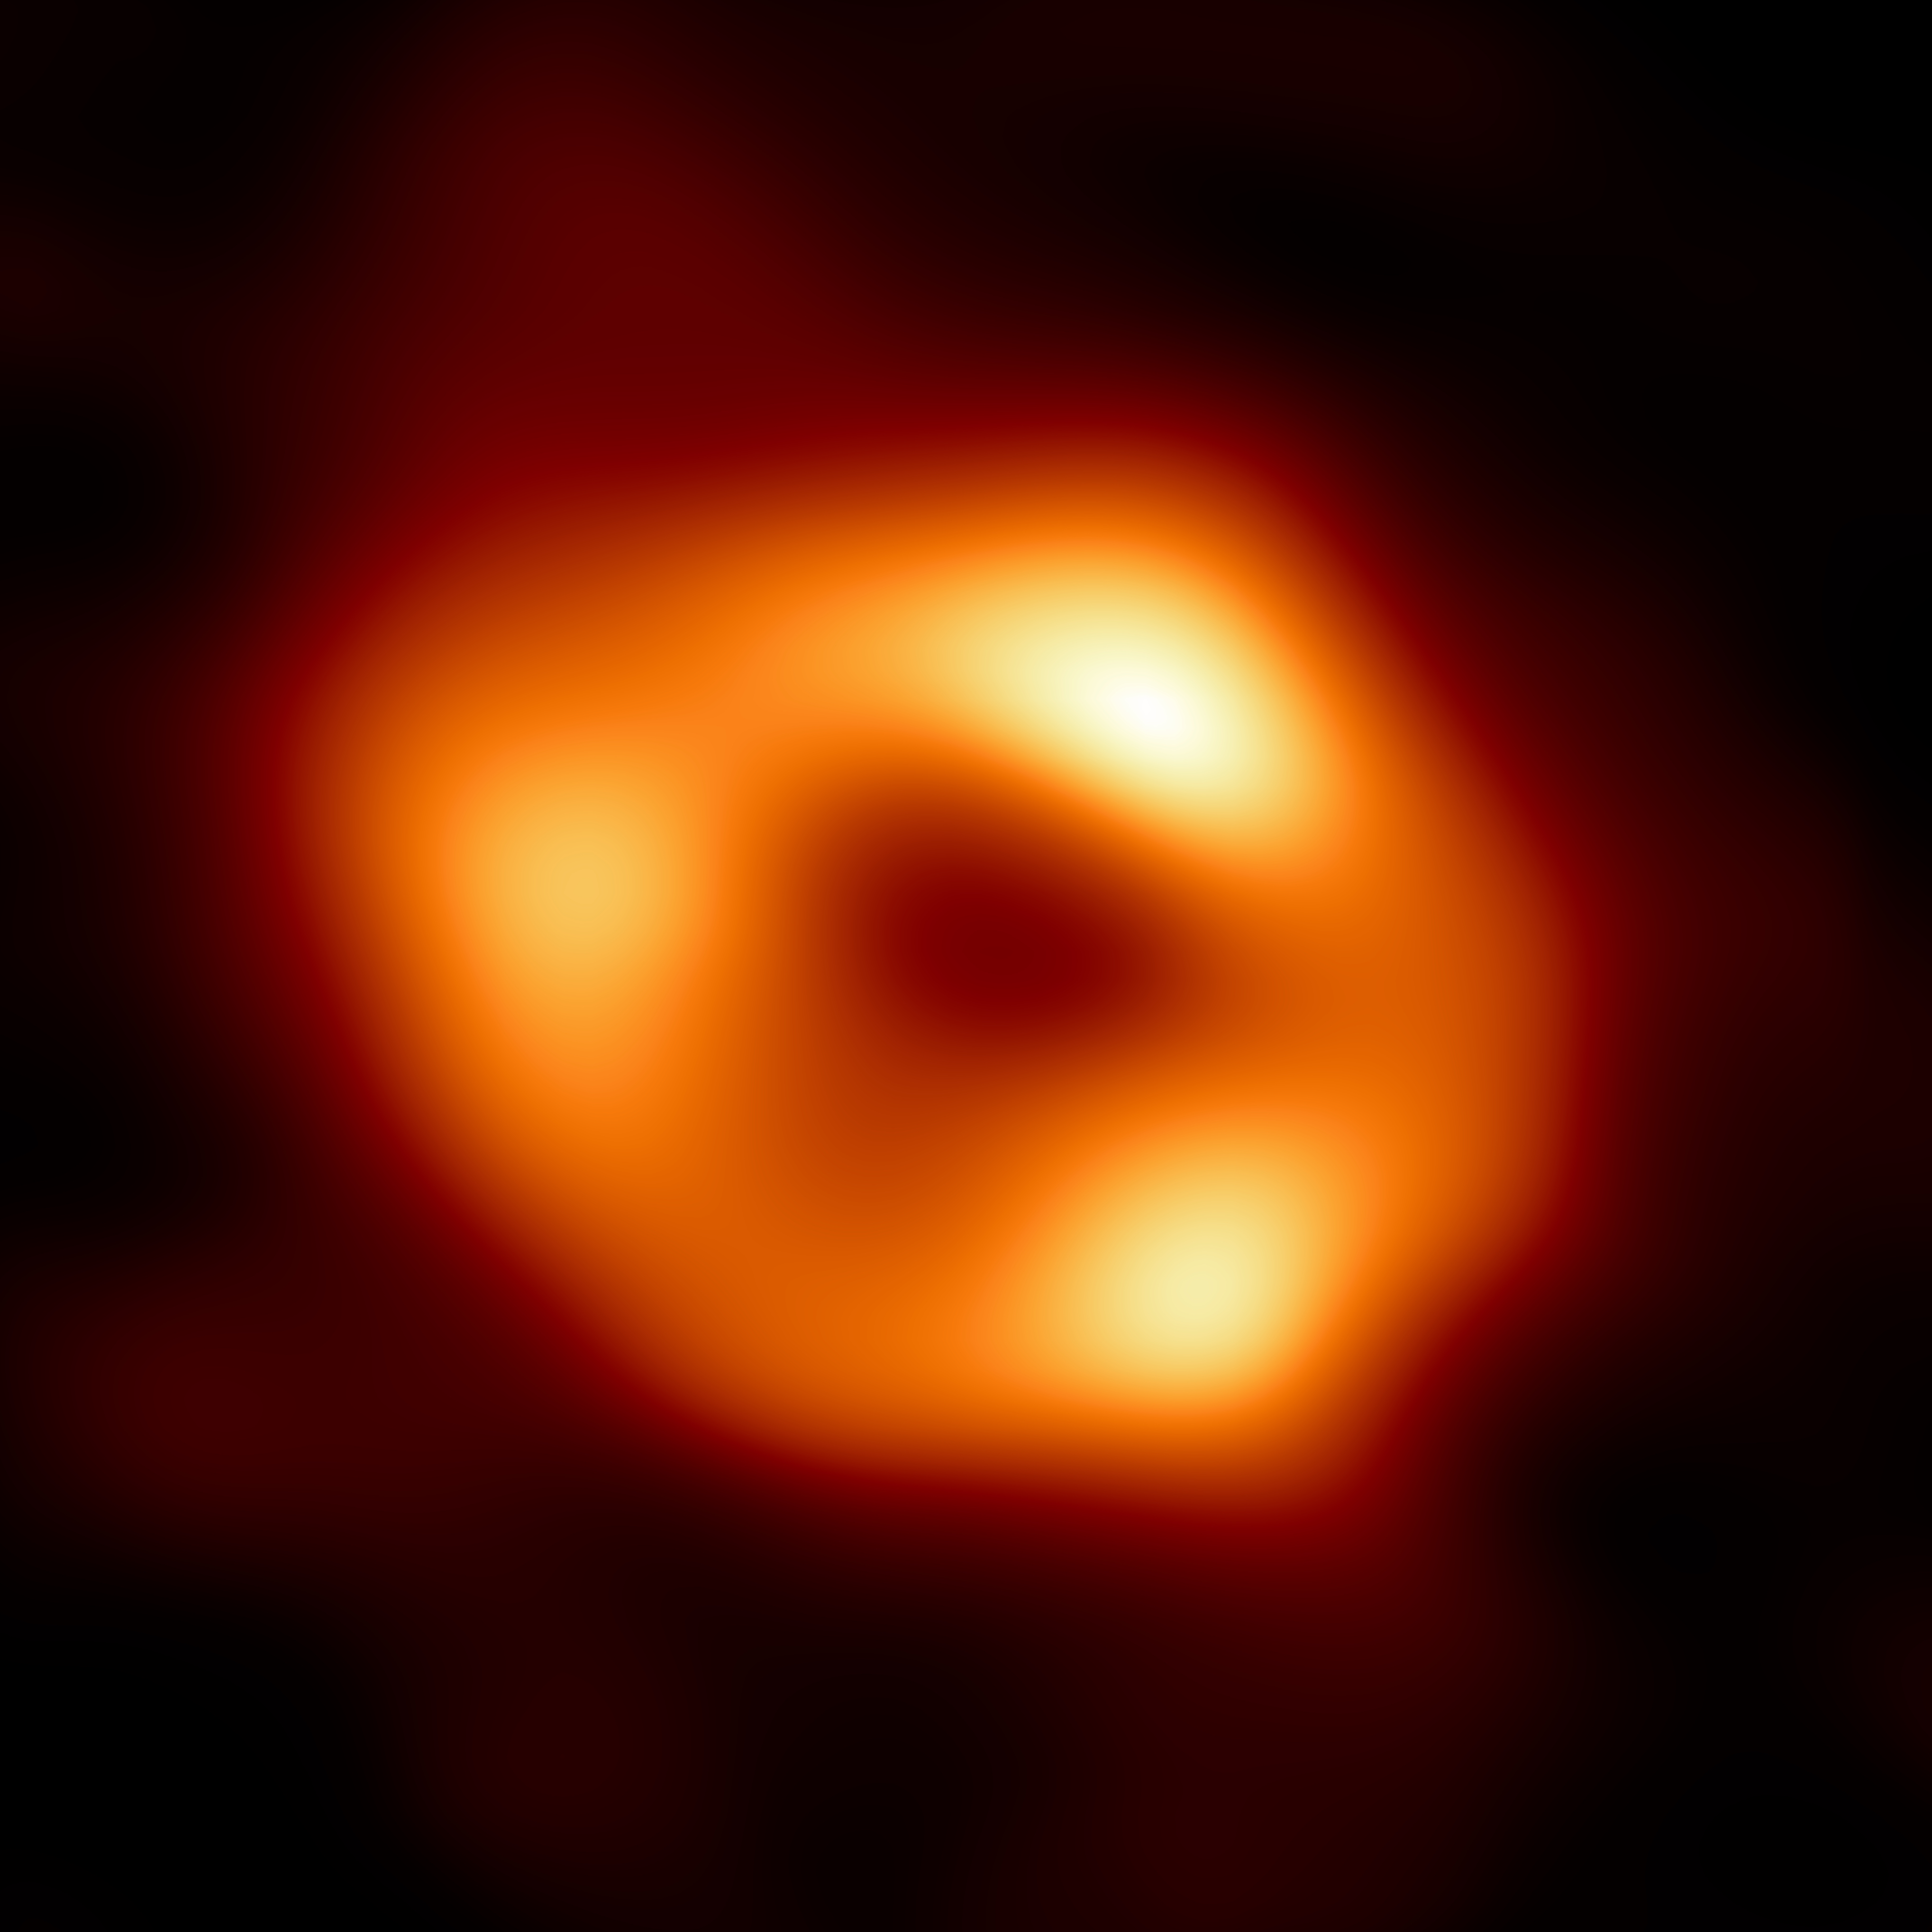 Questa è la prima immagine di Sagittarius A* (Sgr A*), il buco nero supermassiccio al centro della nostra galassia, la Via Lattea. È la prima prova visiva diretta della presenza di questo buco nero. L’immagine è stata realizzata dall'Event Horizon Telescope (EHT), un array che collega otto osservatori radioastronomici in tutto il mondo a formare un unico telescopio virtuale delle dimensioni della Terra. Il progetto prende il nome dall'orizzonte degli eventi, il confine di un buco nero oltre il quale nulla può sfuggire, nemmeno la luce. Anche se non possiamo vedere il buco nero stesso, perché non emette luce, il gas che brilla attorno ad esso possiede un aspetto distintivo: una regione centrale scura (chiamata “ombra” del buco nero) circondata da una struttura brillante a forma di anello. La nuova immagine cattura la luce distorta dalla potente gravità del buco nero, che ha una massa pari a quattro milioni di volte quella del Sole. L'immagine del buco nero Sgr A* è una media delle diverse immagini che la Collaborazione EHT ha estratto dalle sue osservazioni del 2017.  - EHT Collaboration